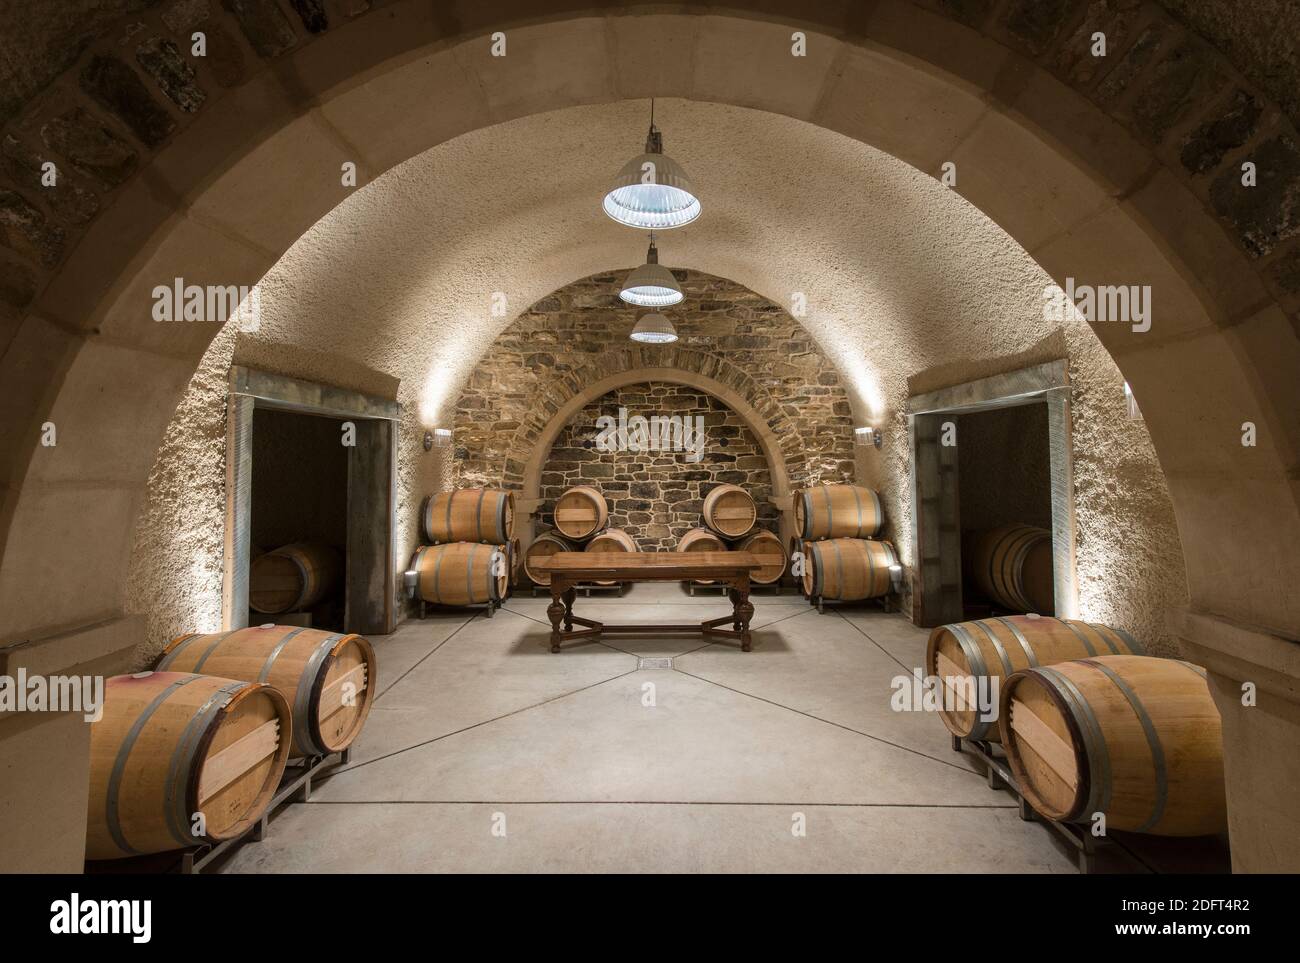 Le vin est stocké dans des barils de bois jusqu'à l'âge et ferment dans une zone de stockage souterraine à RDV Vineyards. Banque D'Images